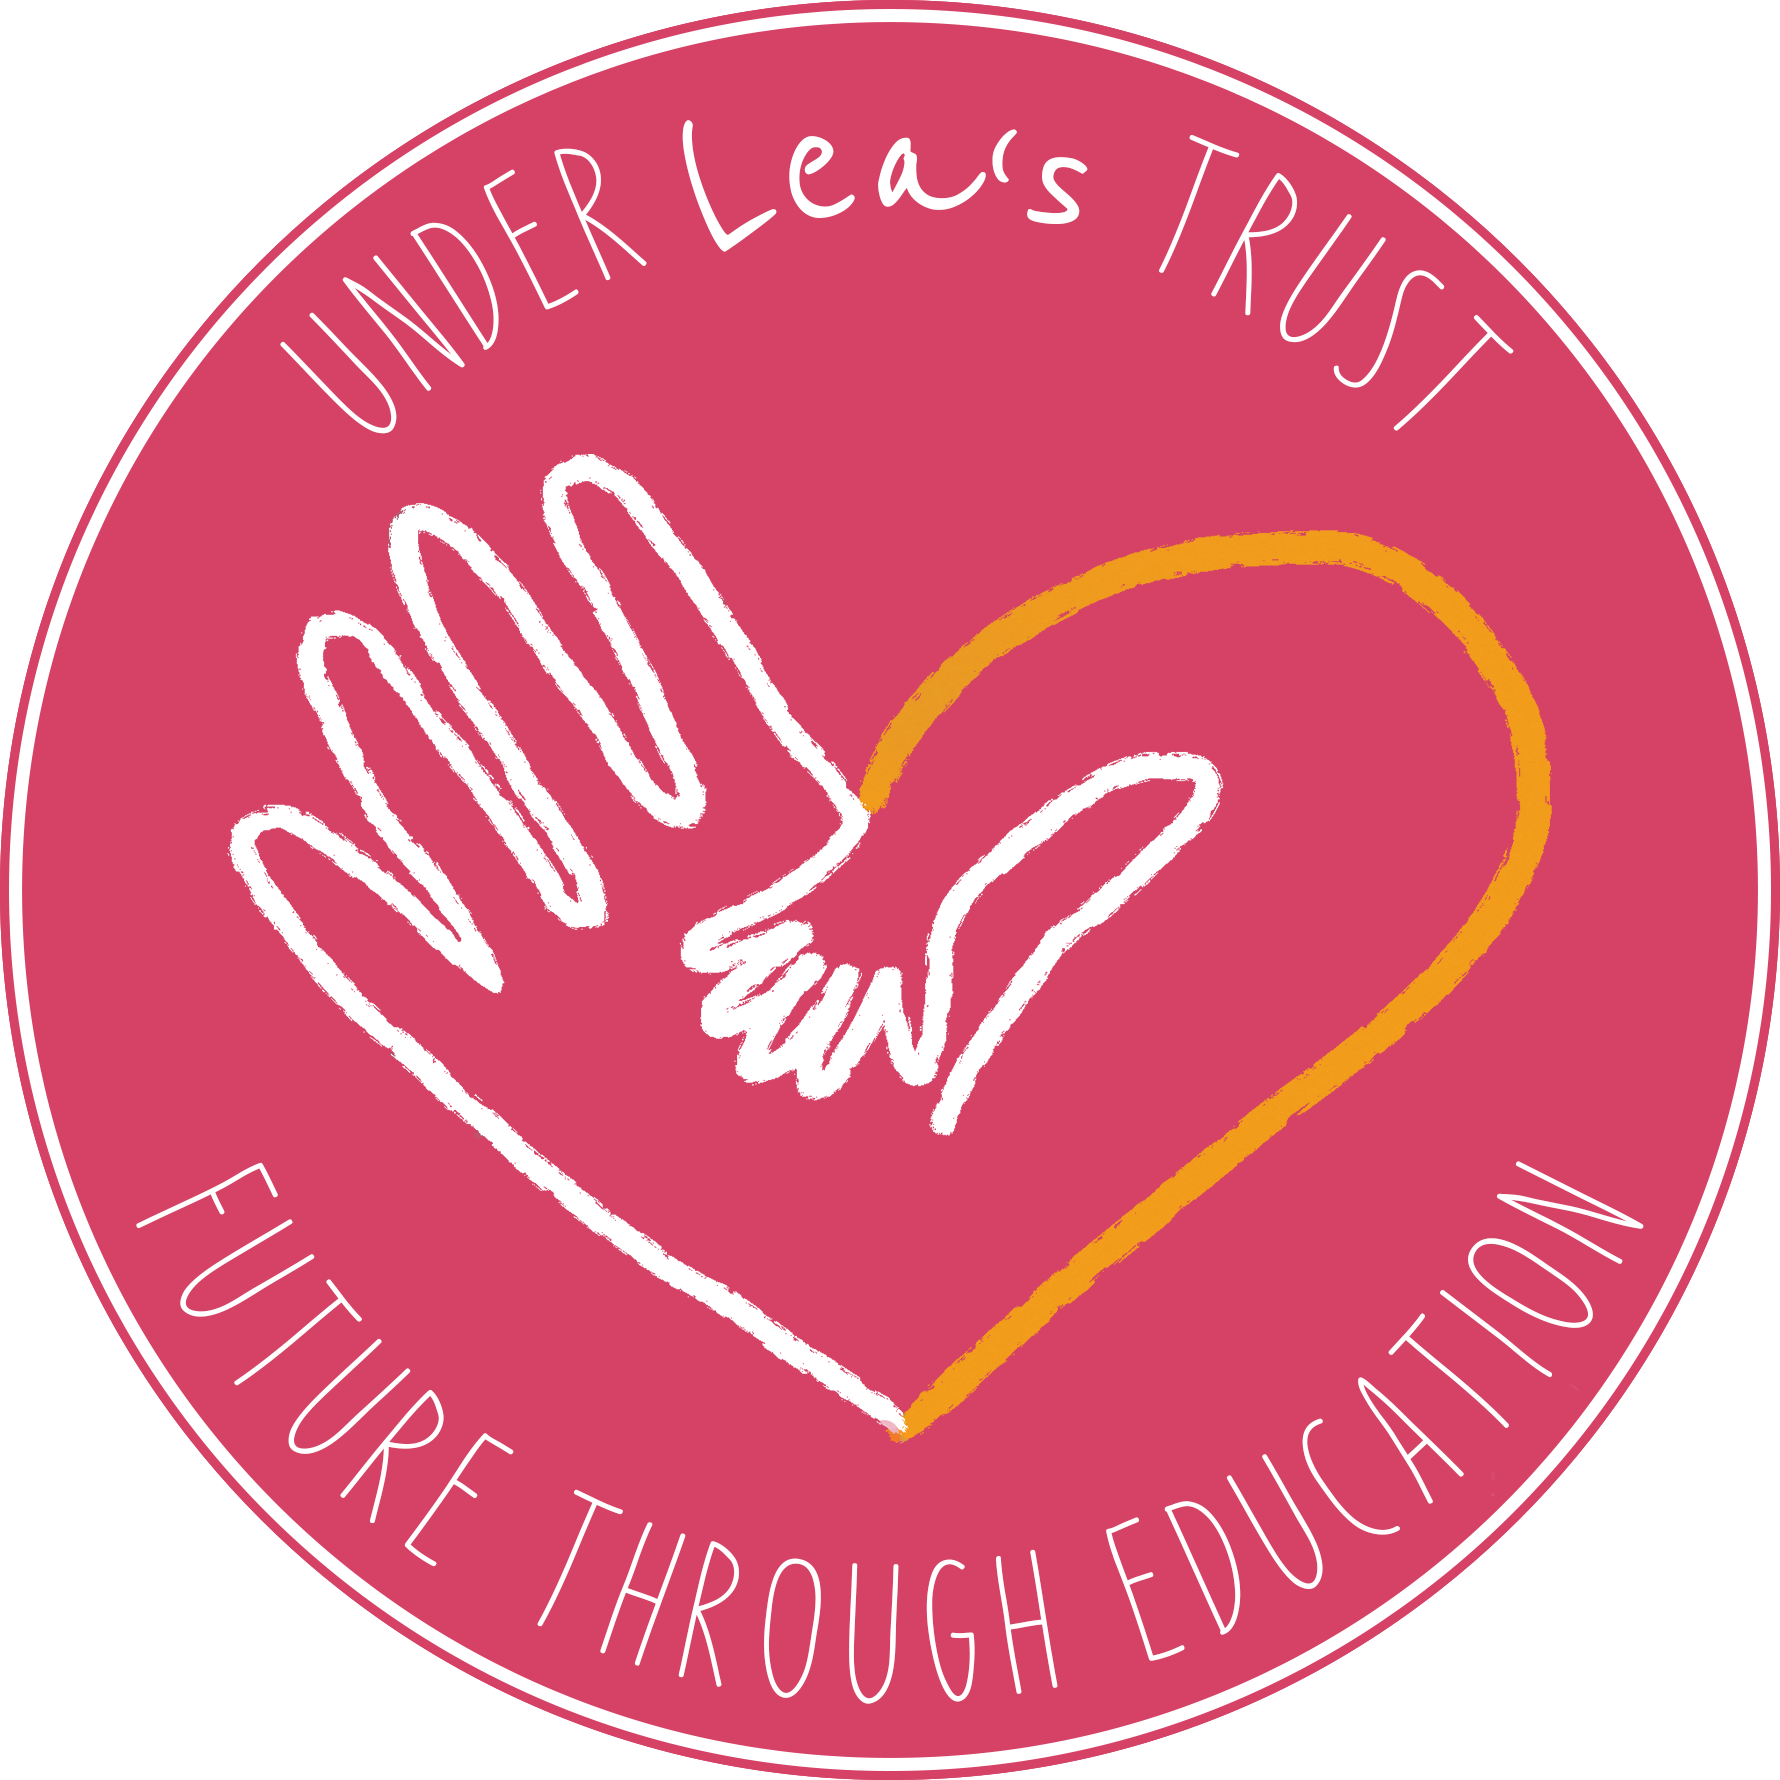 Soweto Youth Initiative logo